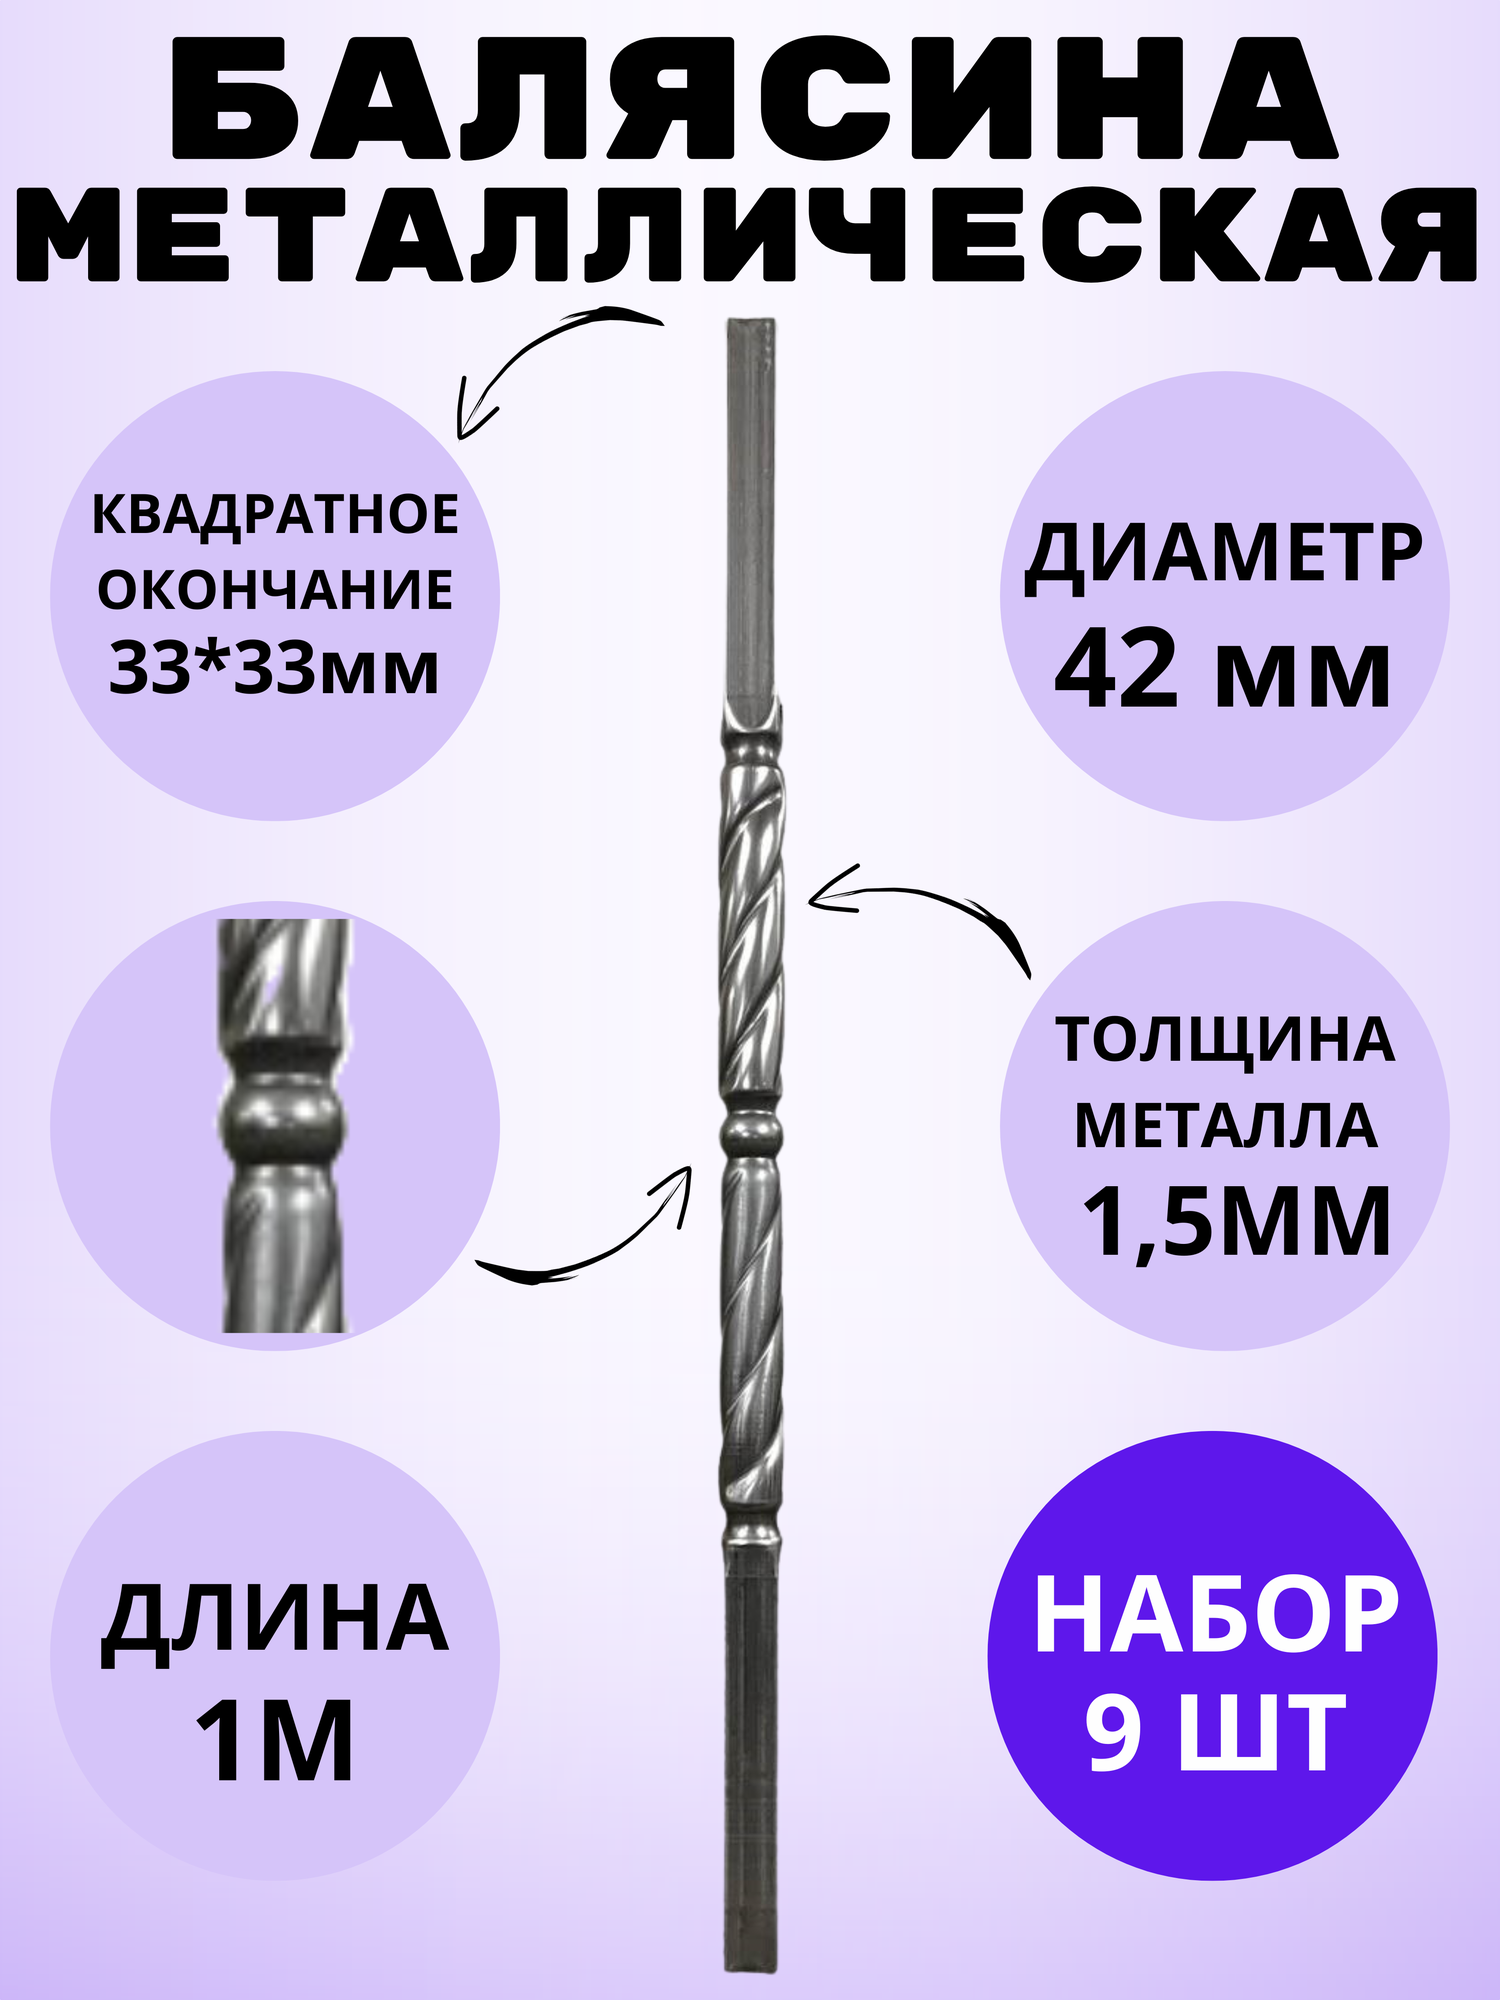 Набор балясин кованых металлических Royal Kovka 9 шт диаметр 42 мм квадратные окончания 33х33 мм арт. 33*33.5 В. КВ 9